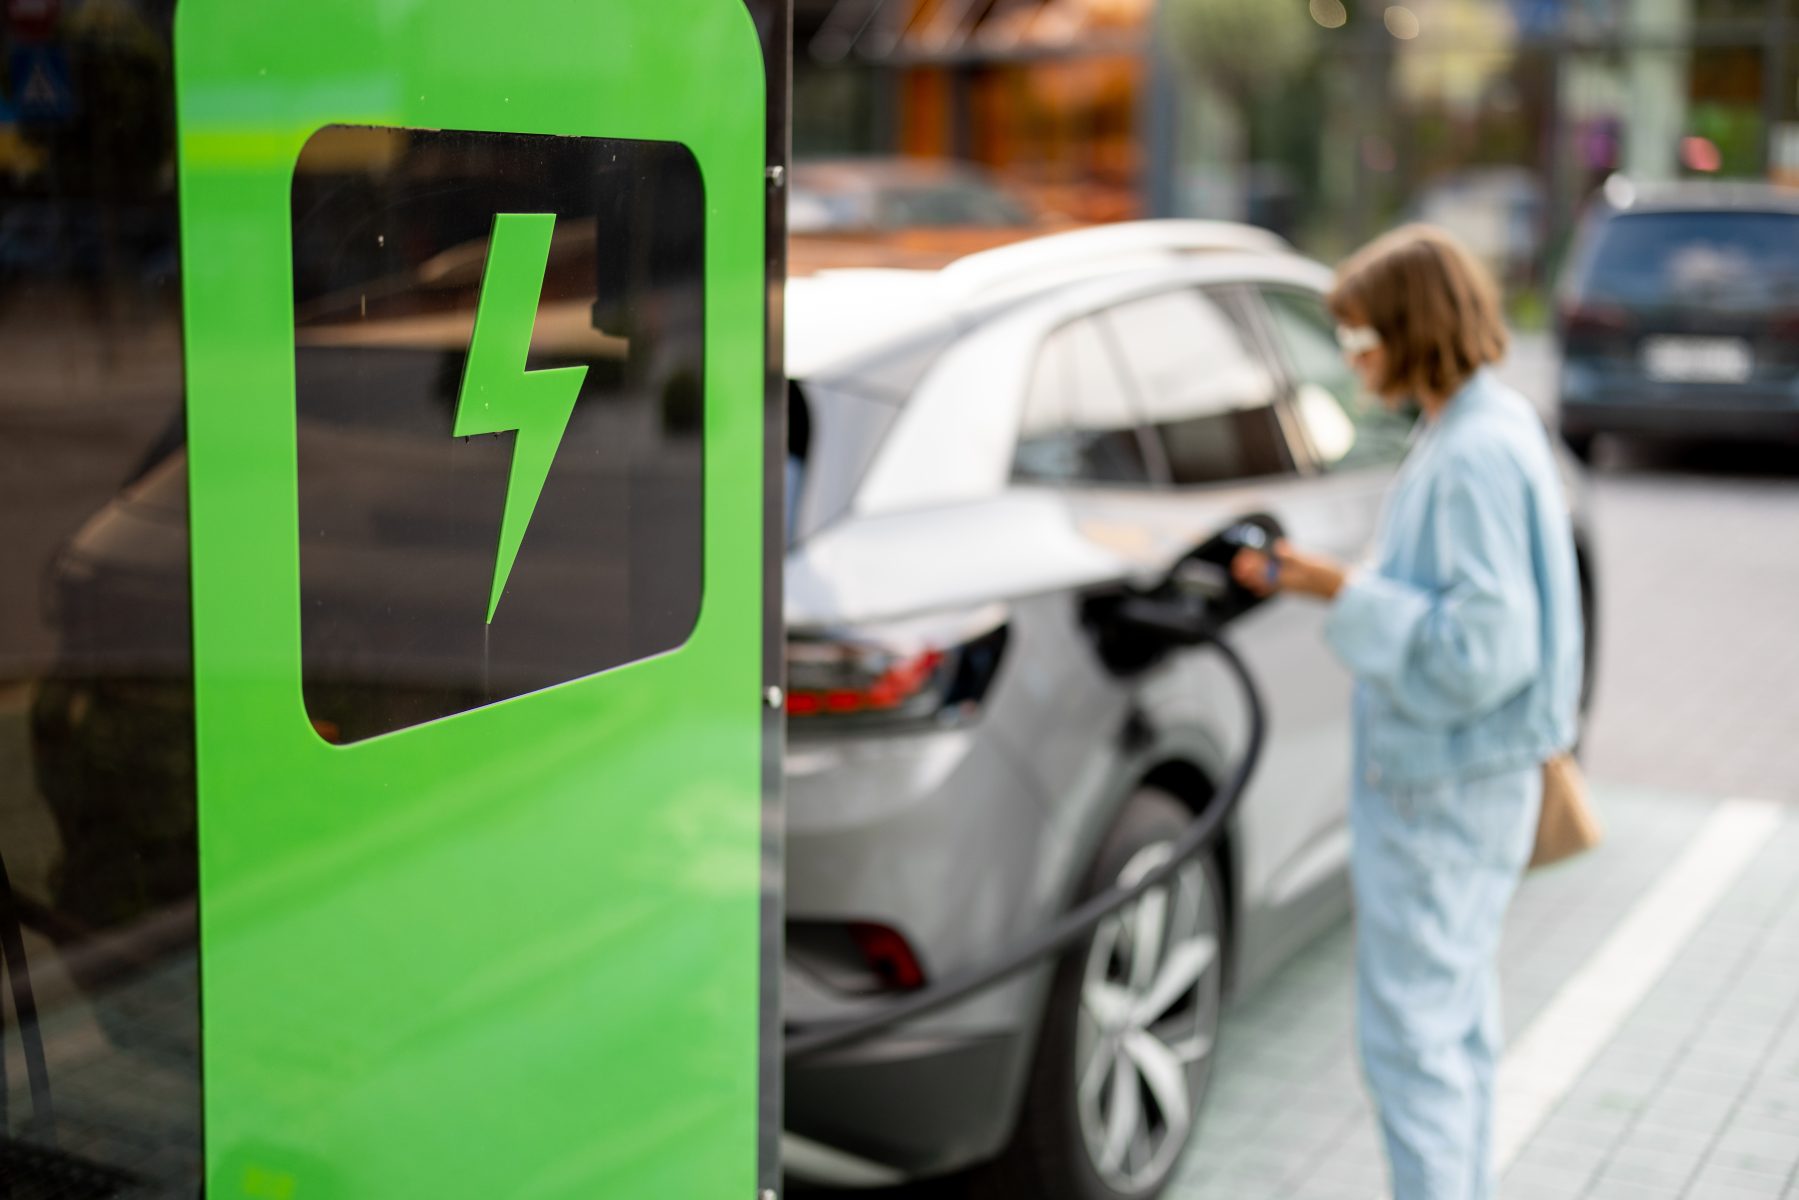 elektrische auto leasen